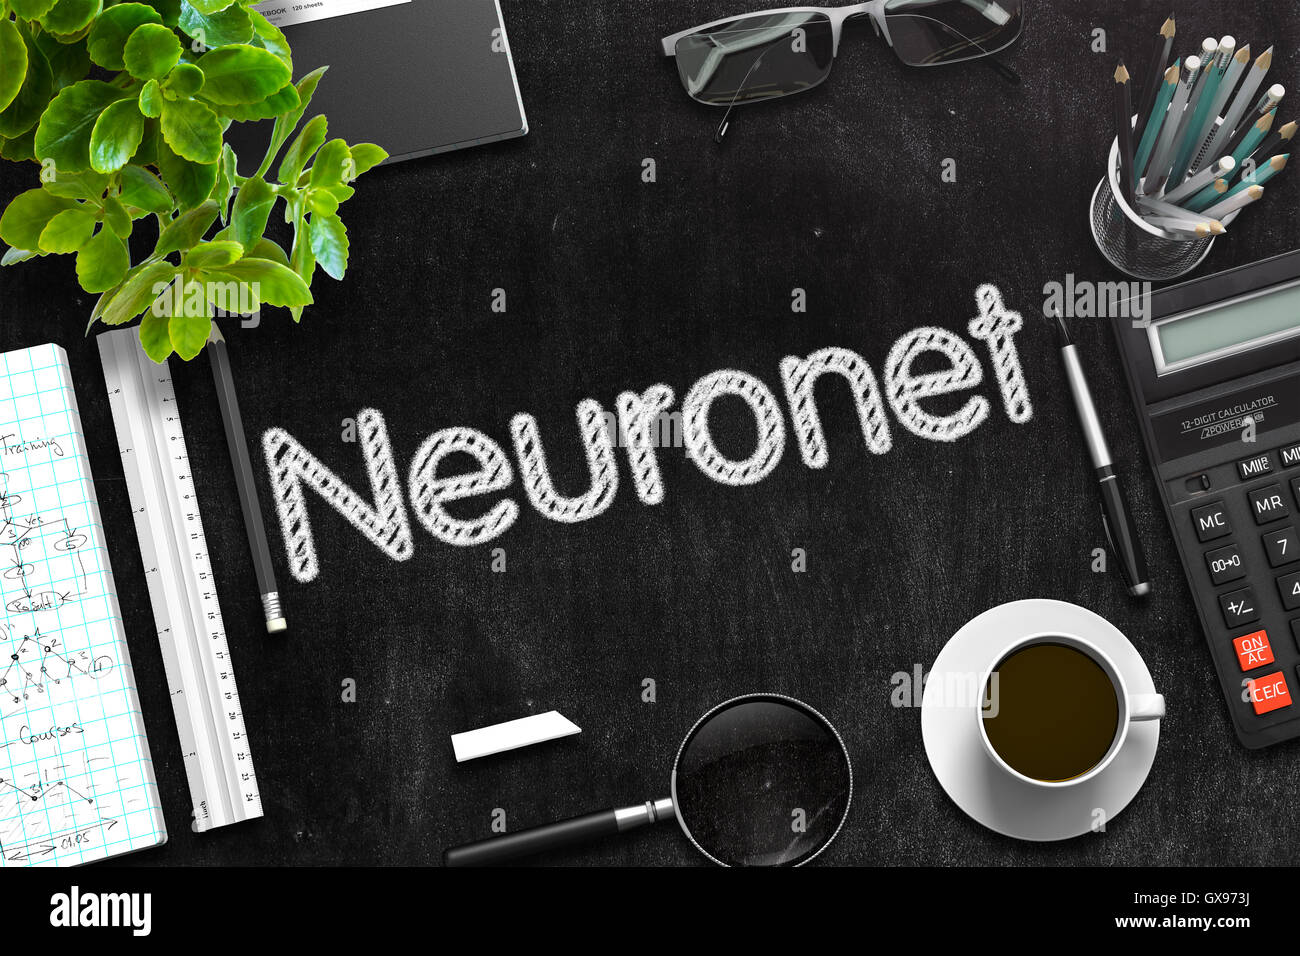 Neuronet Handwritten on Black Chalkboard. 3D Rendering. Stock Photo